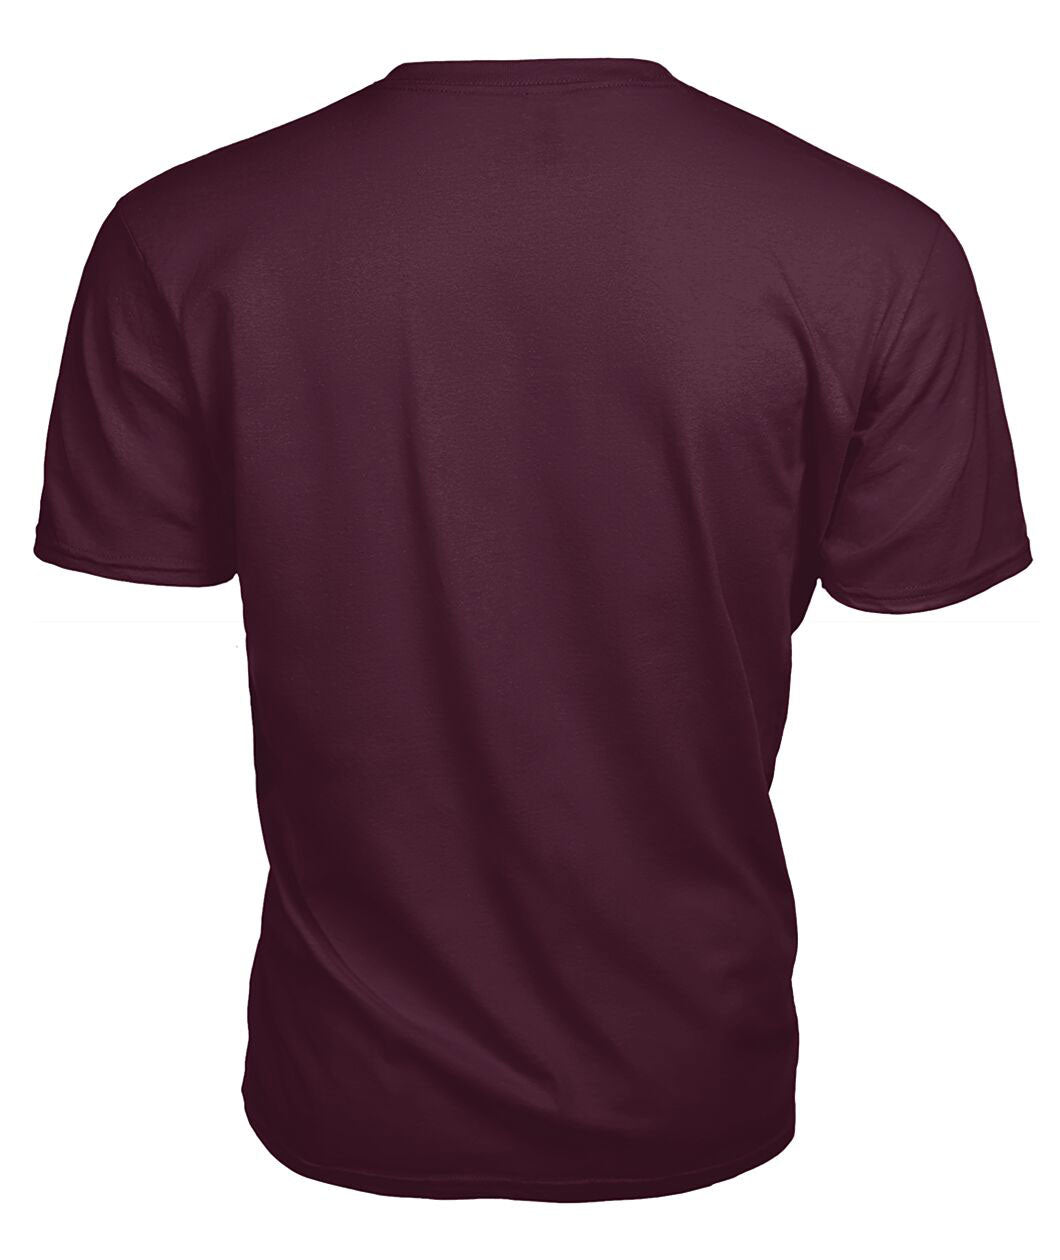 Lyon Tartan Crest 2D T-shirt - Blood Runs Through My Veins Style